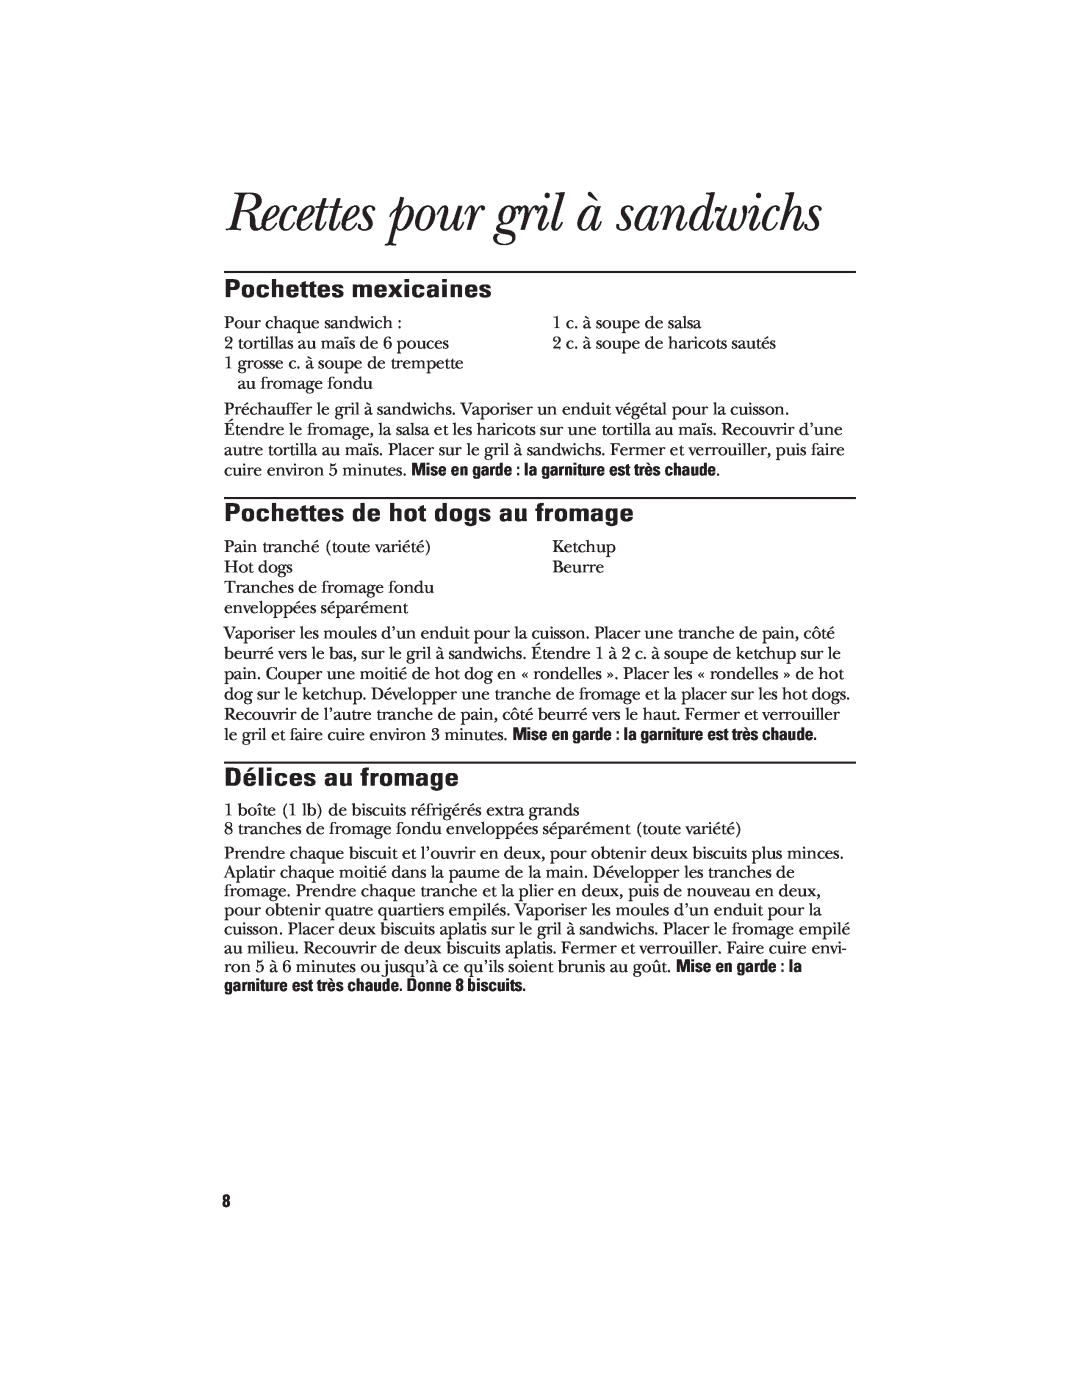 GE 106748 manual Recettes pour gril à sandwichs, Pochettes mexicaines, Pochettes de hot dogs au fromage, Délices au fromage 